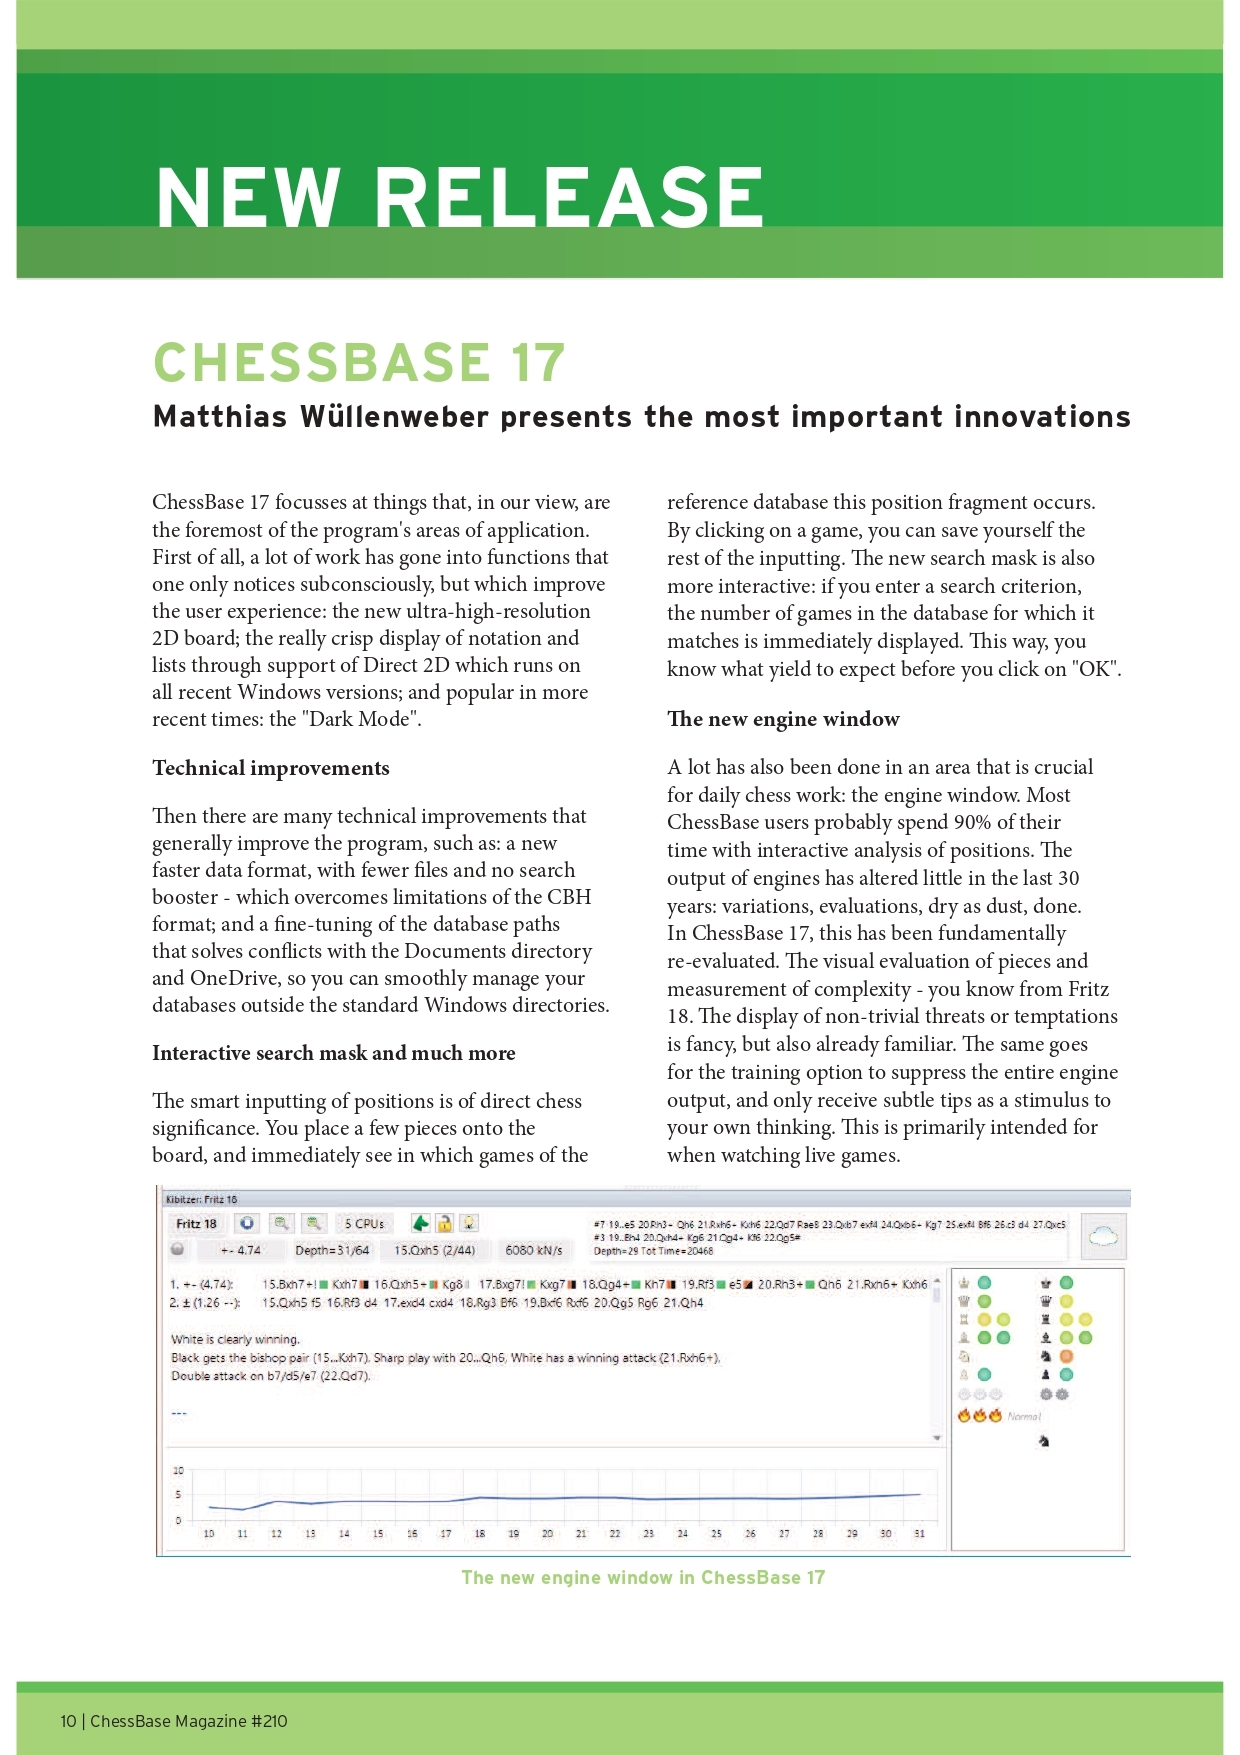 ChessBase 17 Upgrade + Mega Database 2023 Upgrade